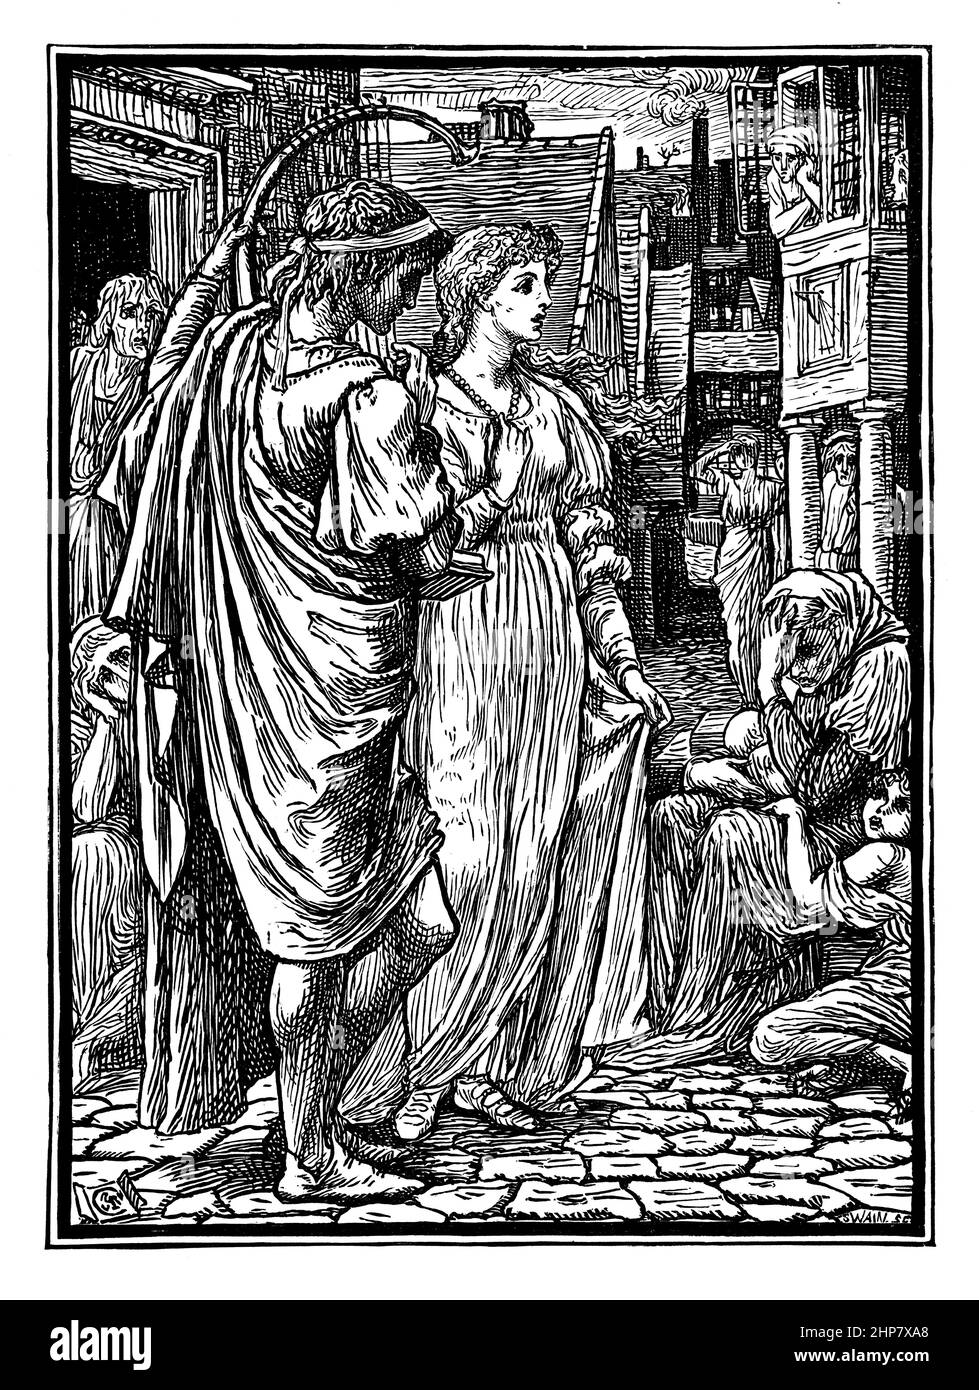 Klassisch gekleidete Figuren auf der Straße, 1880 Illustration von Walter Crane, aus der Halskette der Prinzessin Fiorimonde, von Mary de Morgan, herausgegeben von Ma Stockfoto